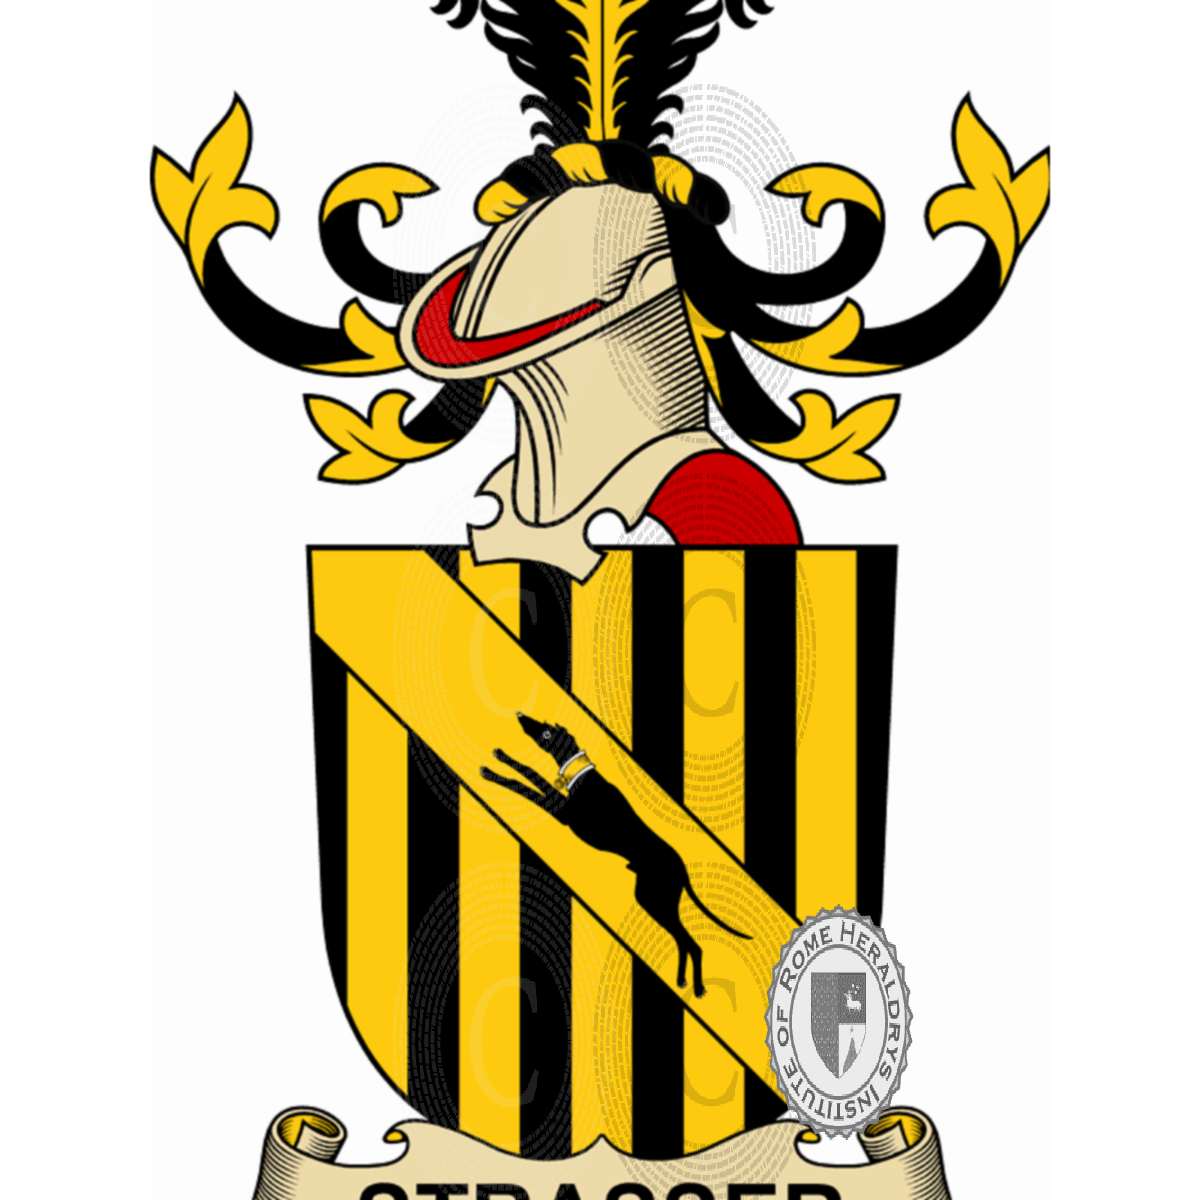 Coat of arms of familyStrasser